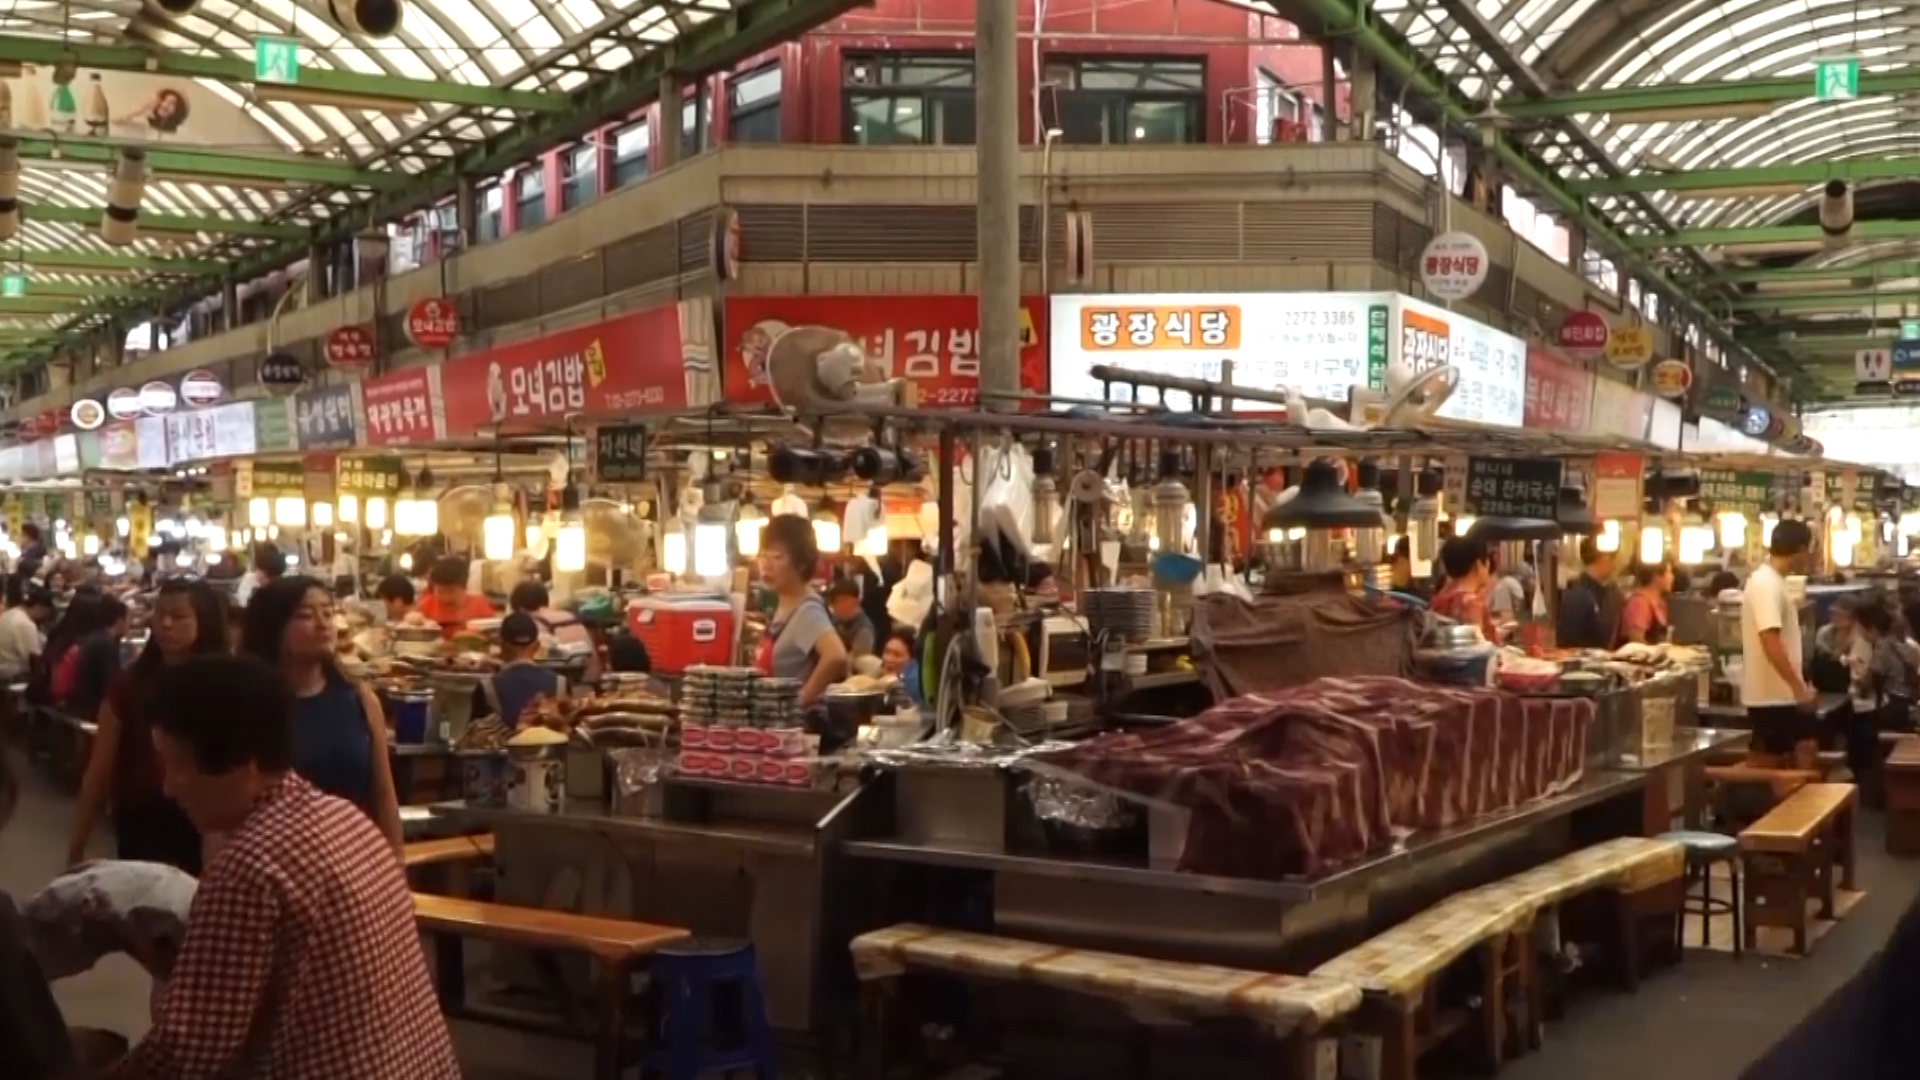 chợ Gwangjang vốn nổi tiếng với rất nhiều món ăn truyền thống hấp dẫn